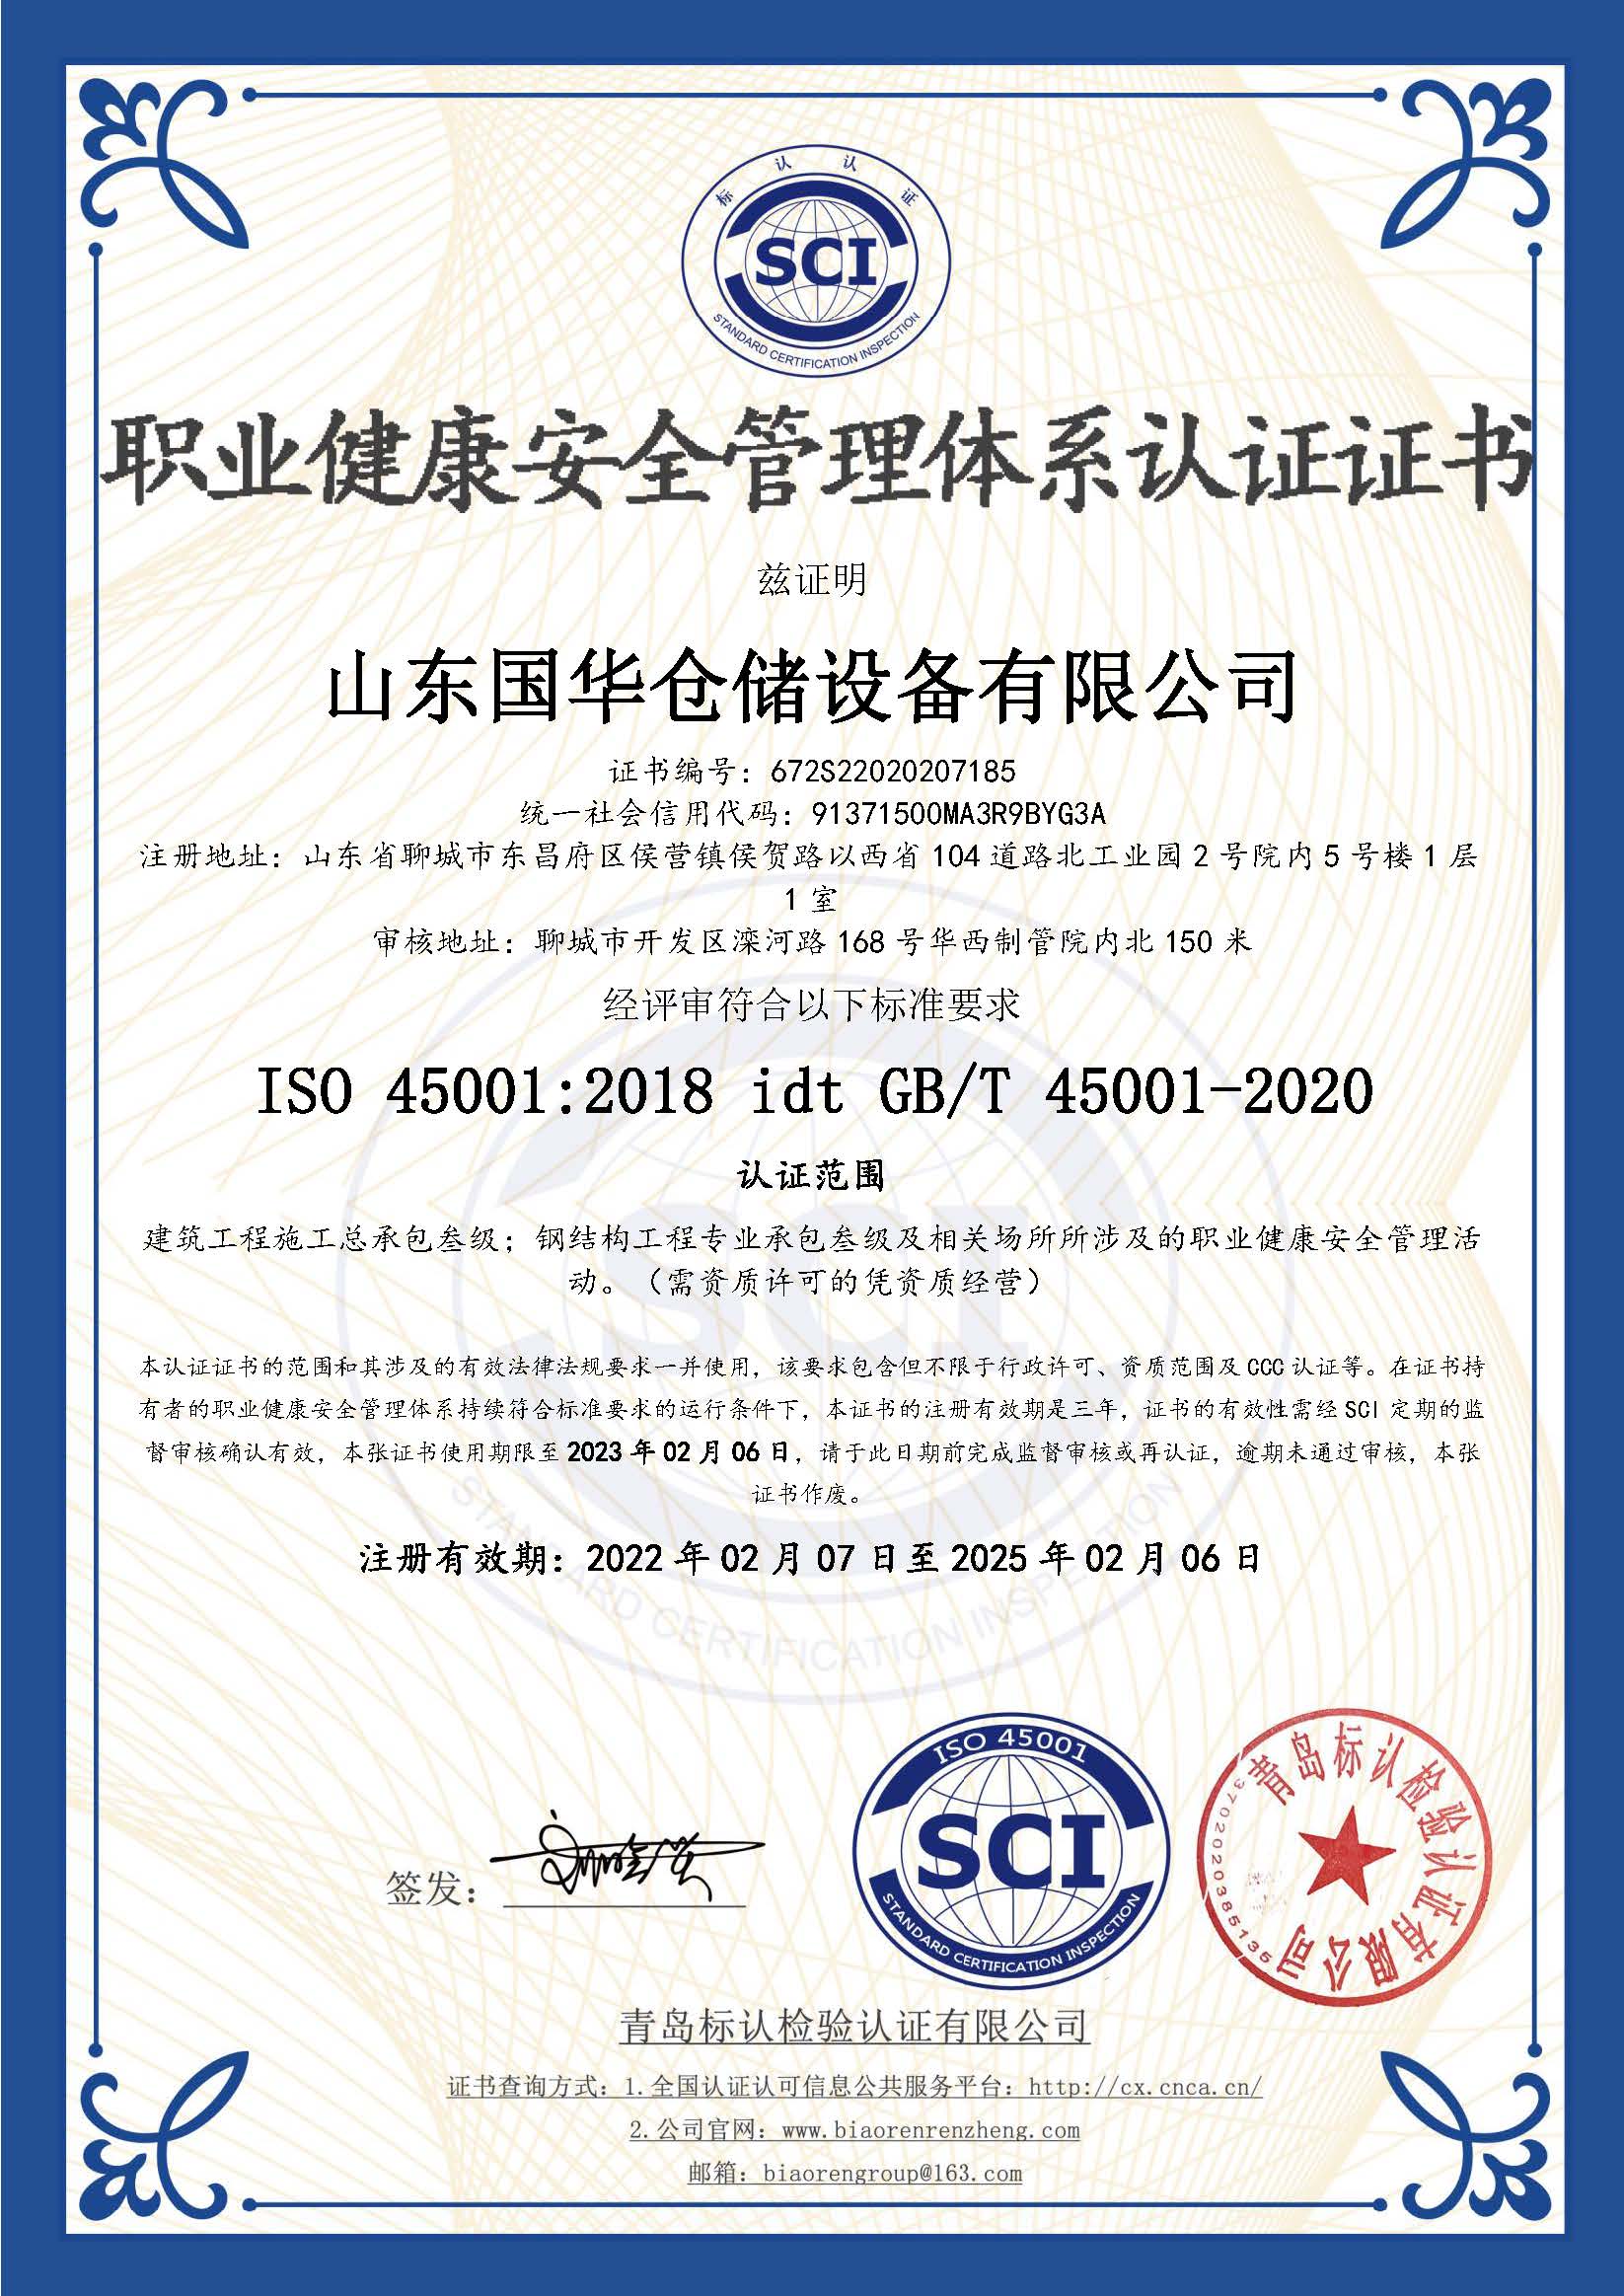 钦州钢板仓职业健康安全管理体系认证证书